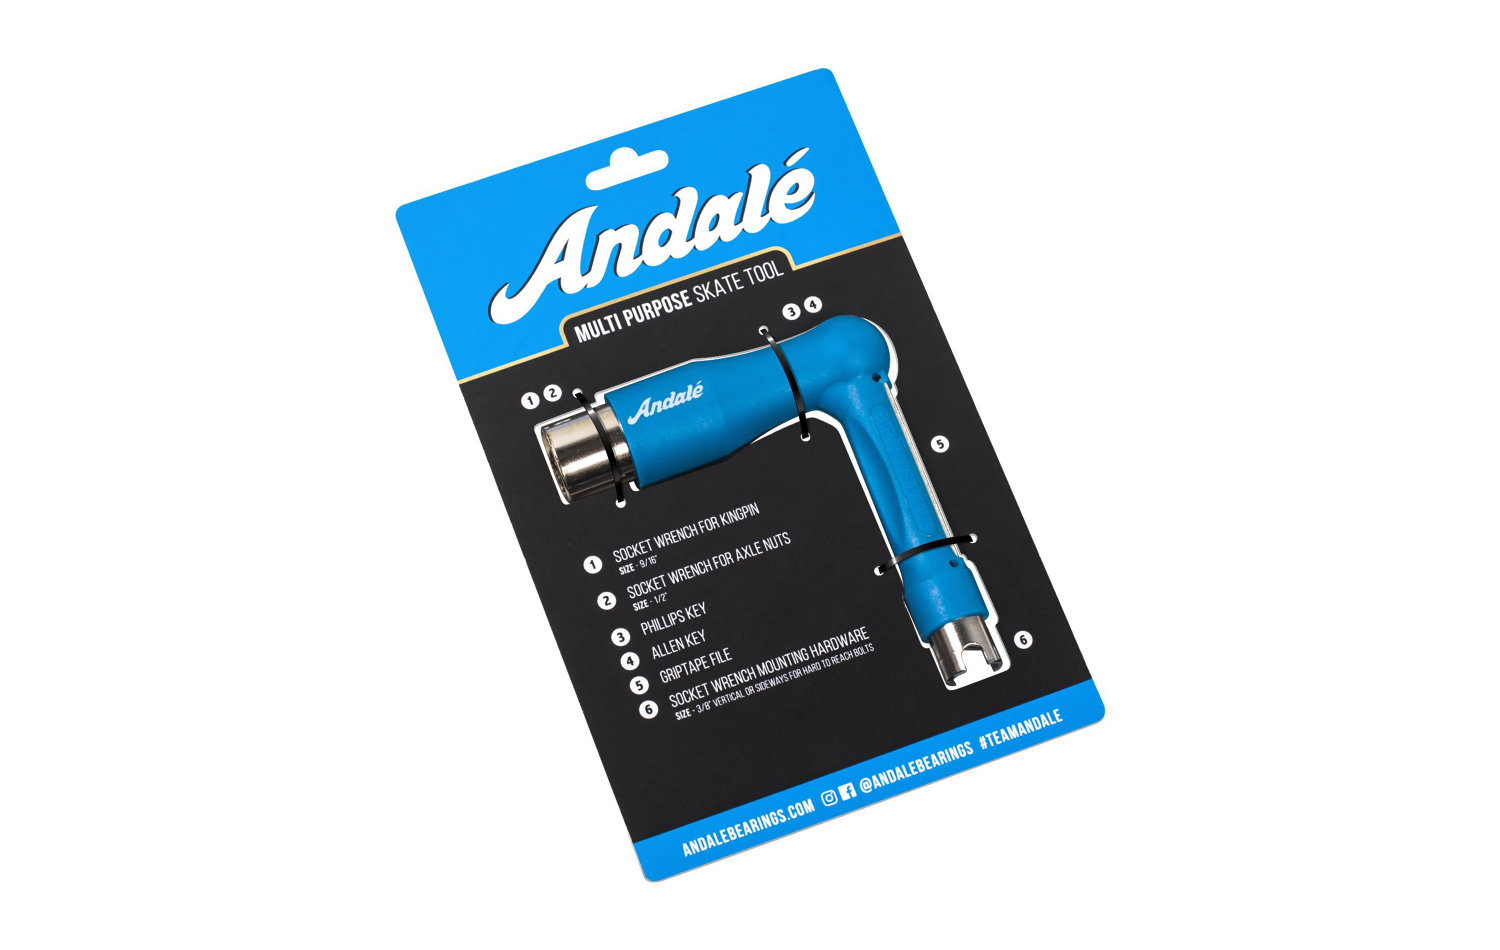 Andalé Multi Purpose Skate Tool (13246002-BLU)